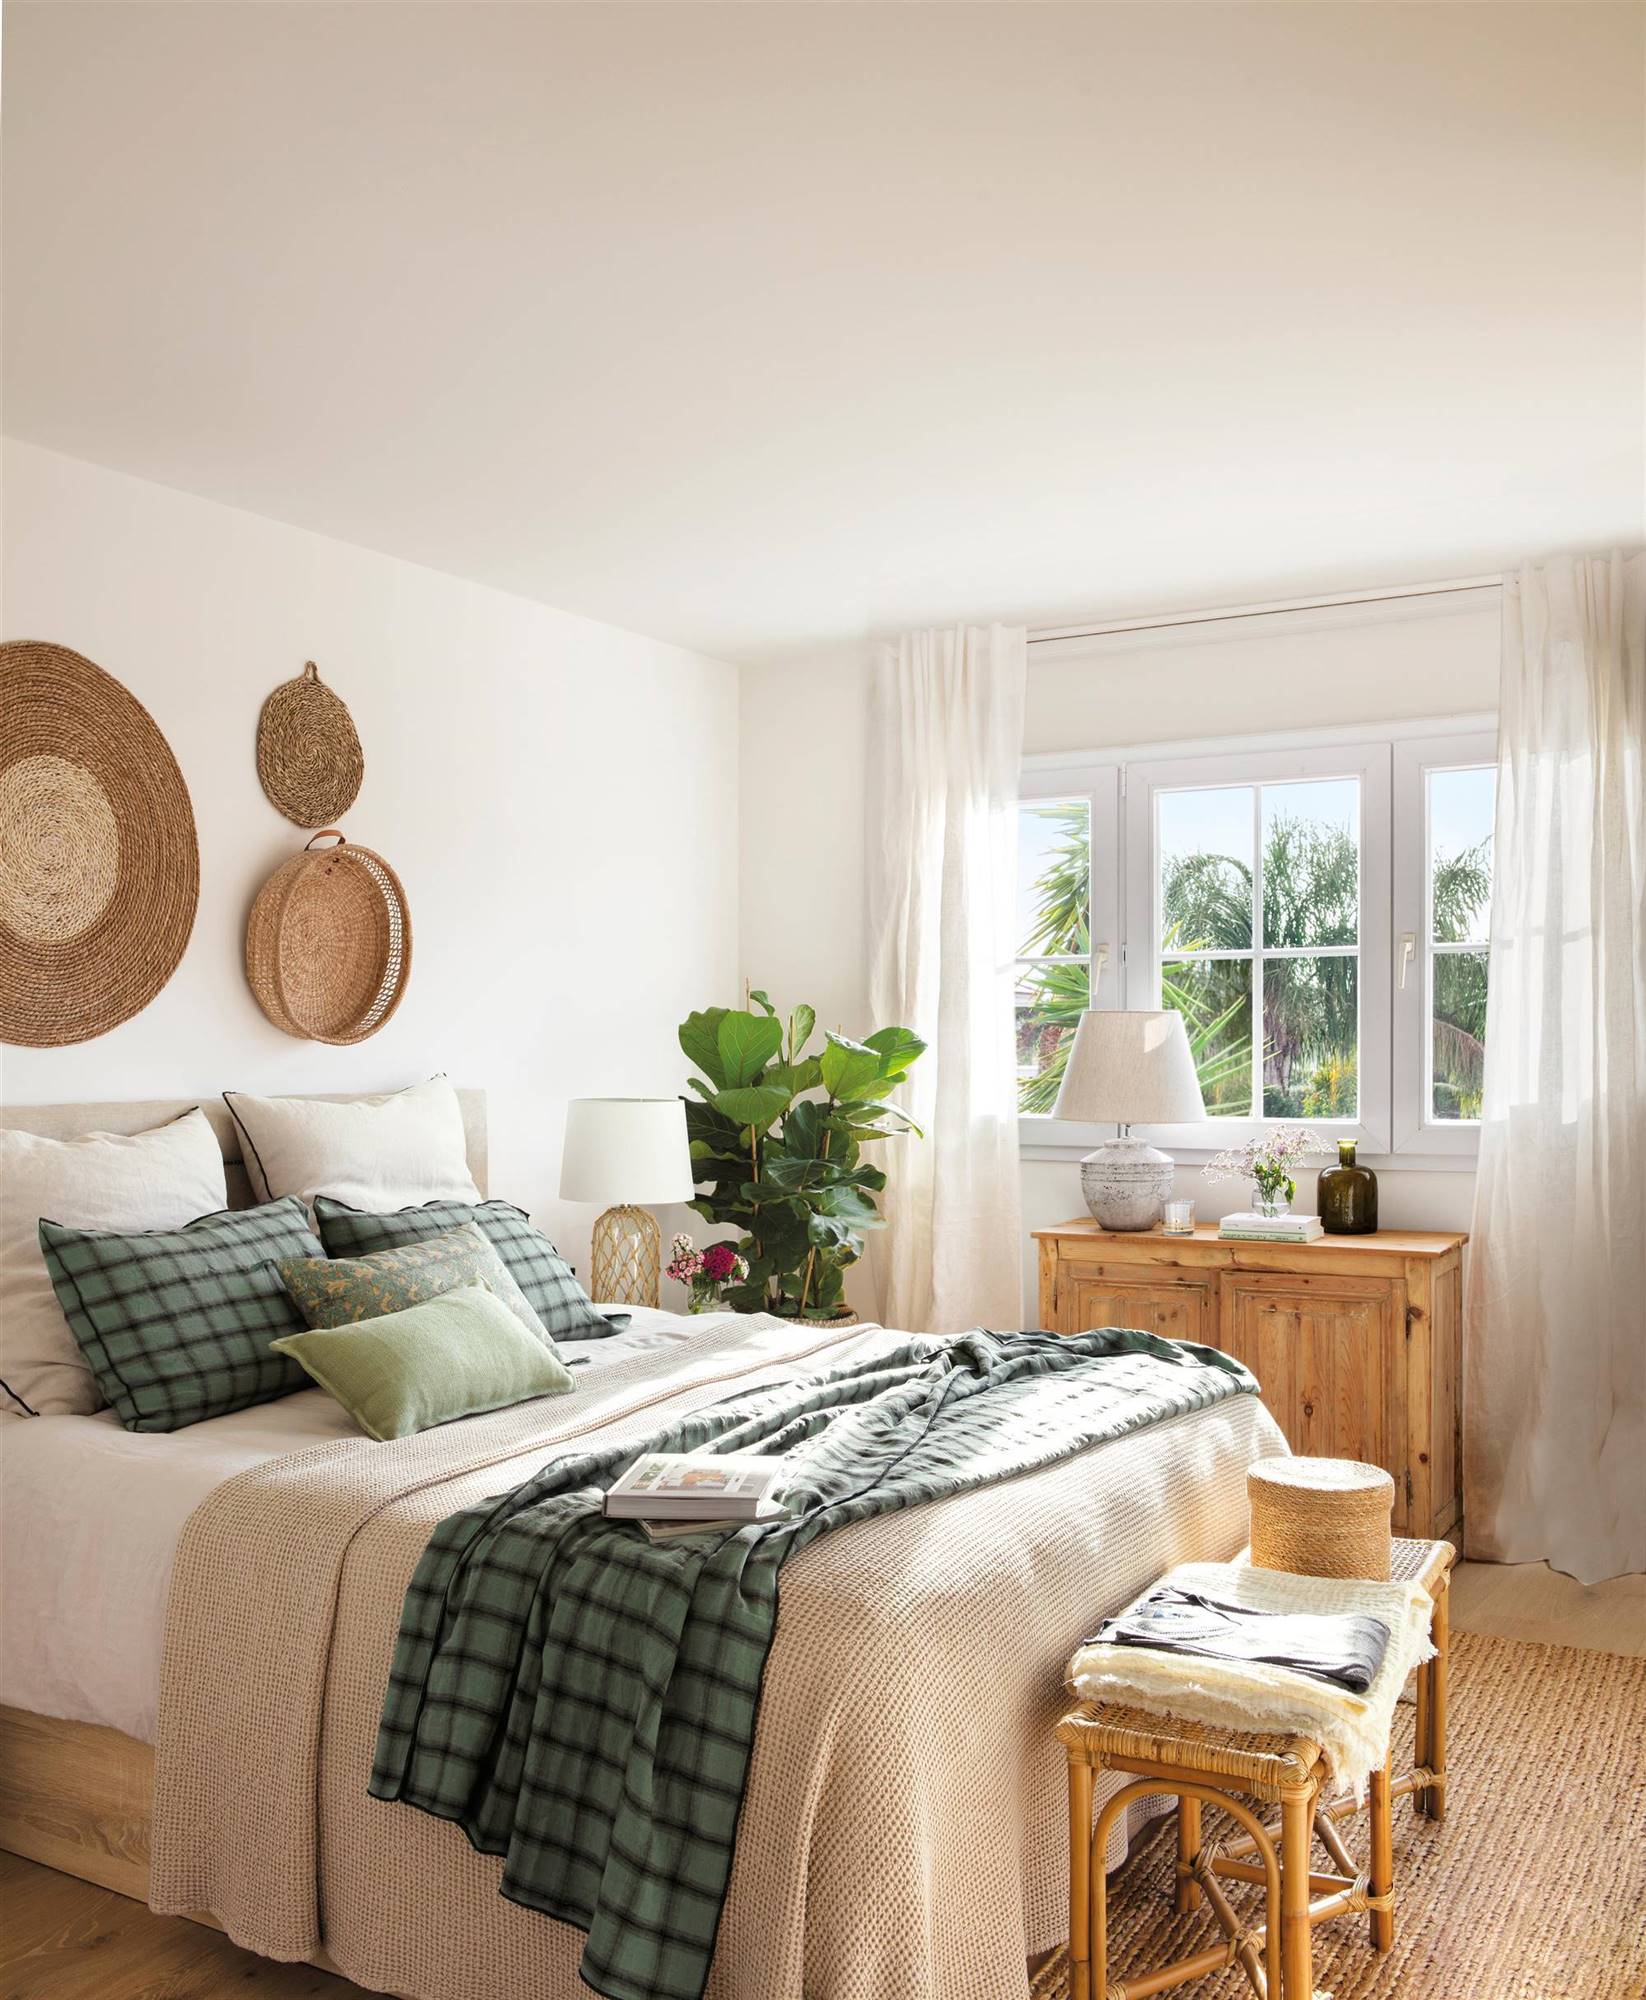 Dormitorio de estìlo boho chic con muebles en madera y adornos en fibra natural. 